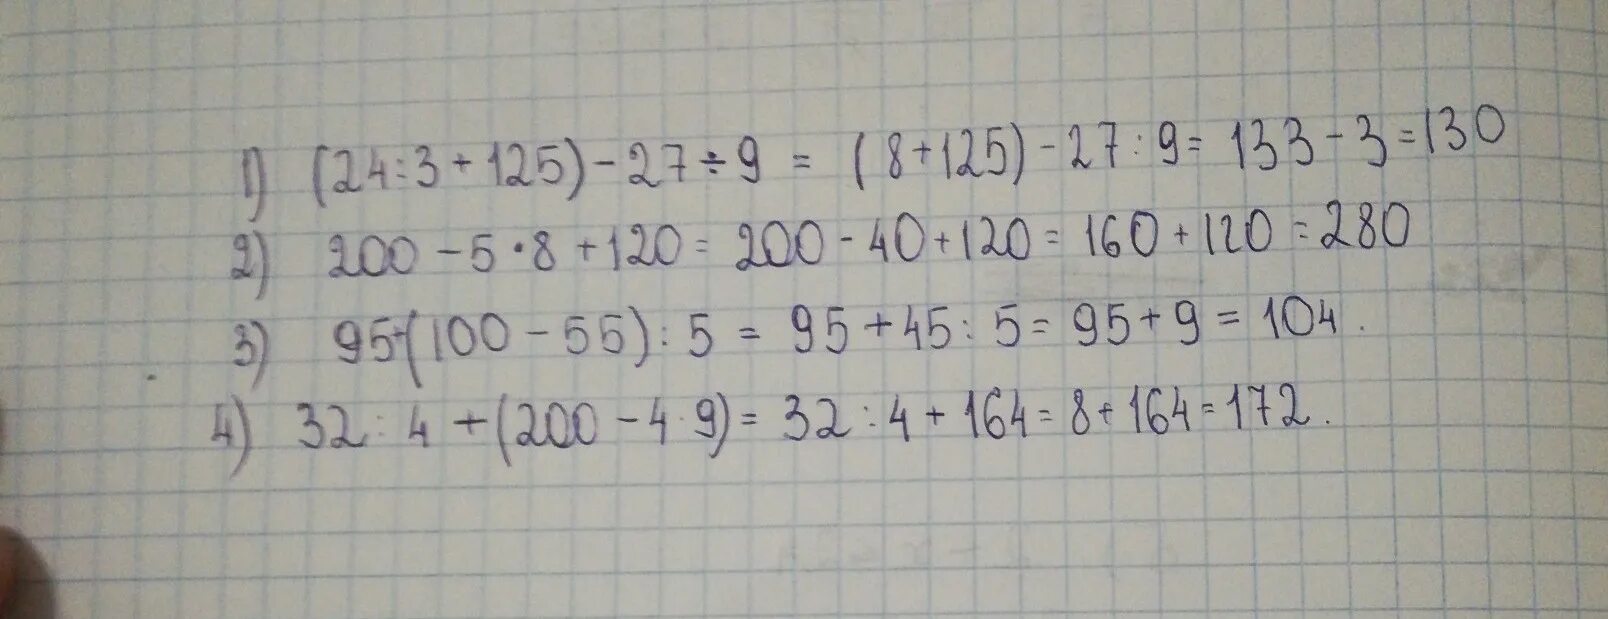 3 27 125 8. 4.200/25. 200•4+200=. 100-27×9-4×3. 125•5•5•5.